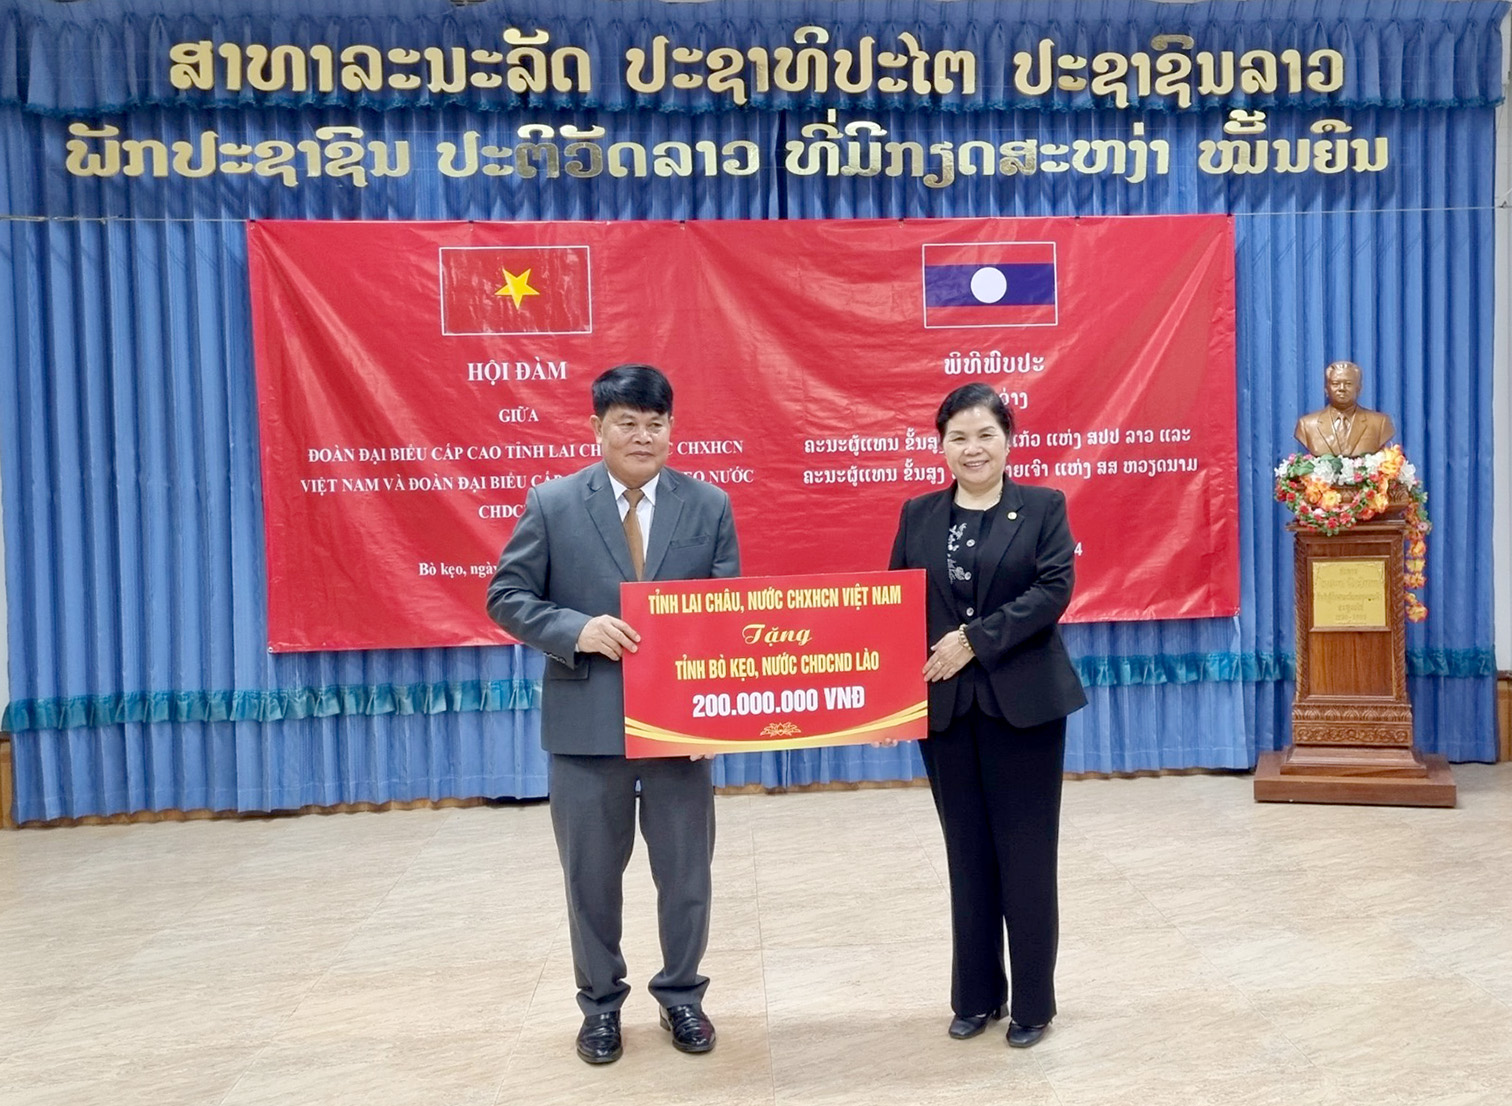 Lãnh đạo tỉnh Lai Châu (Việt Nam) đã trao tặng tỉnh Bò Kẹo (Lào) 200 triệu đồng.